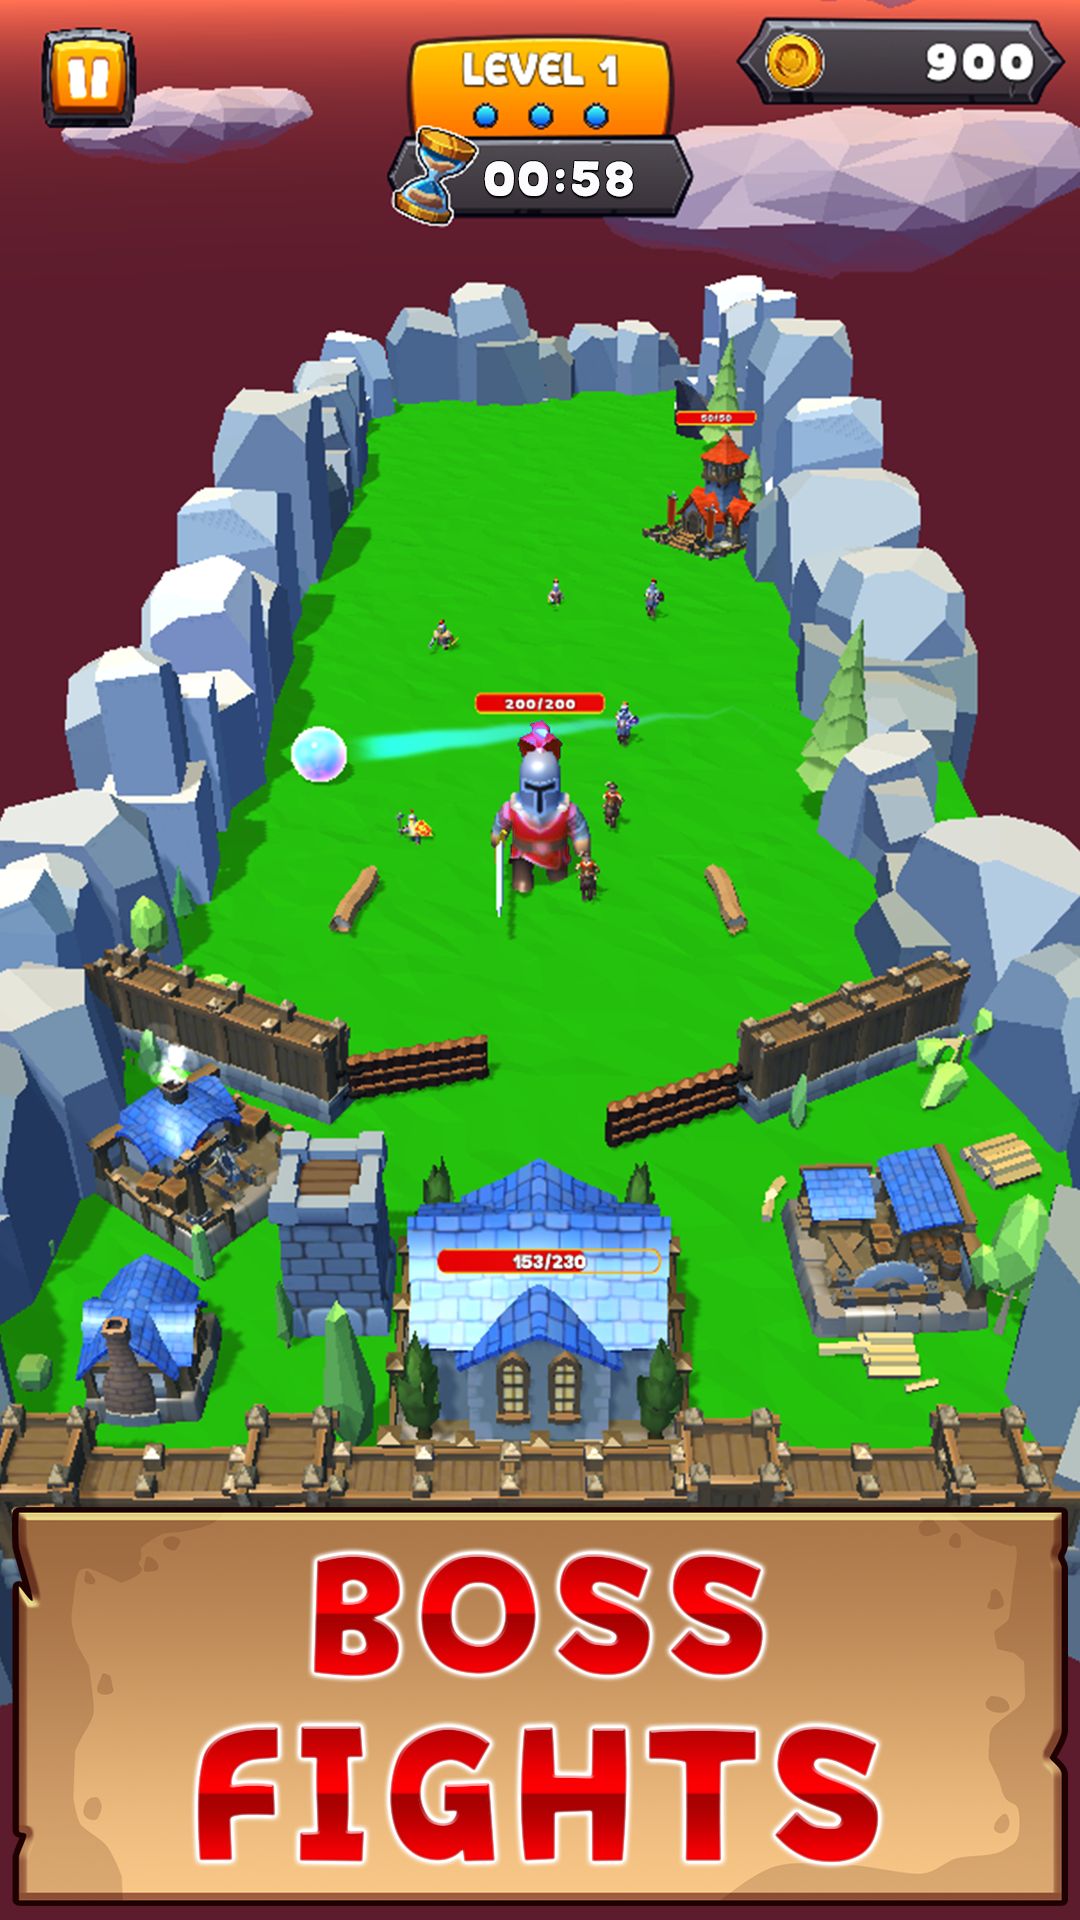 Pinball Kingdom: Tower Defense - Android game screenshots.